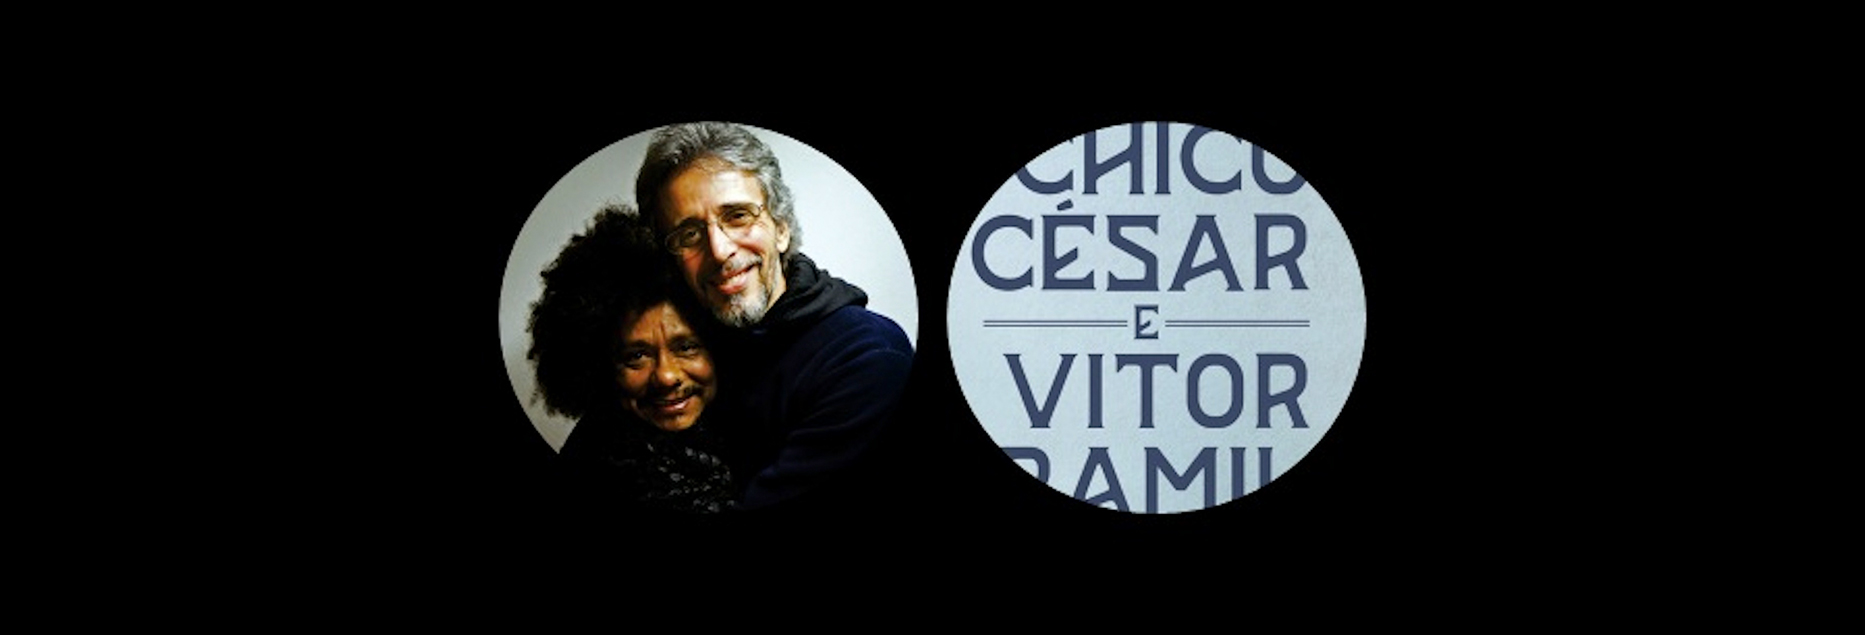 Chico César e Vitor Ramil fazem show no Teatro Rival Petrobras